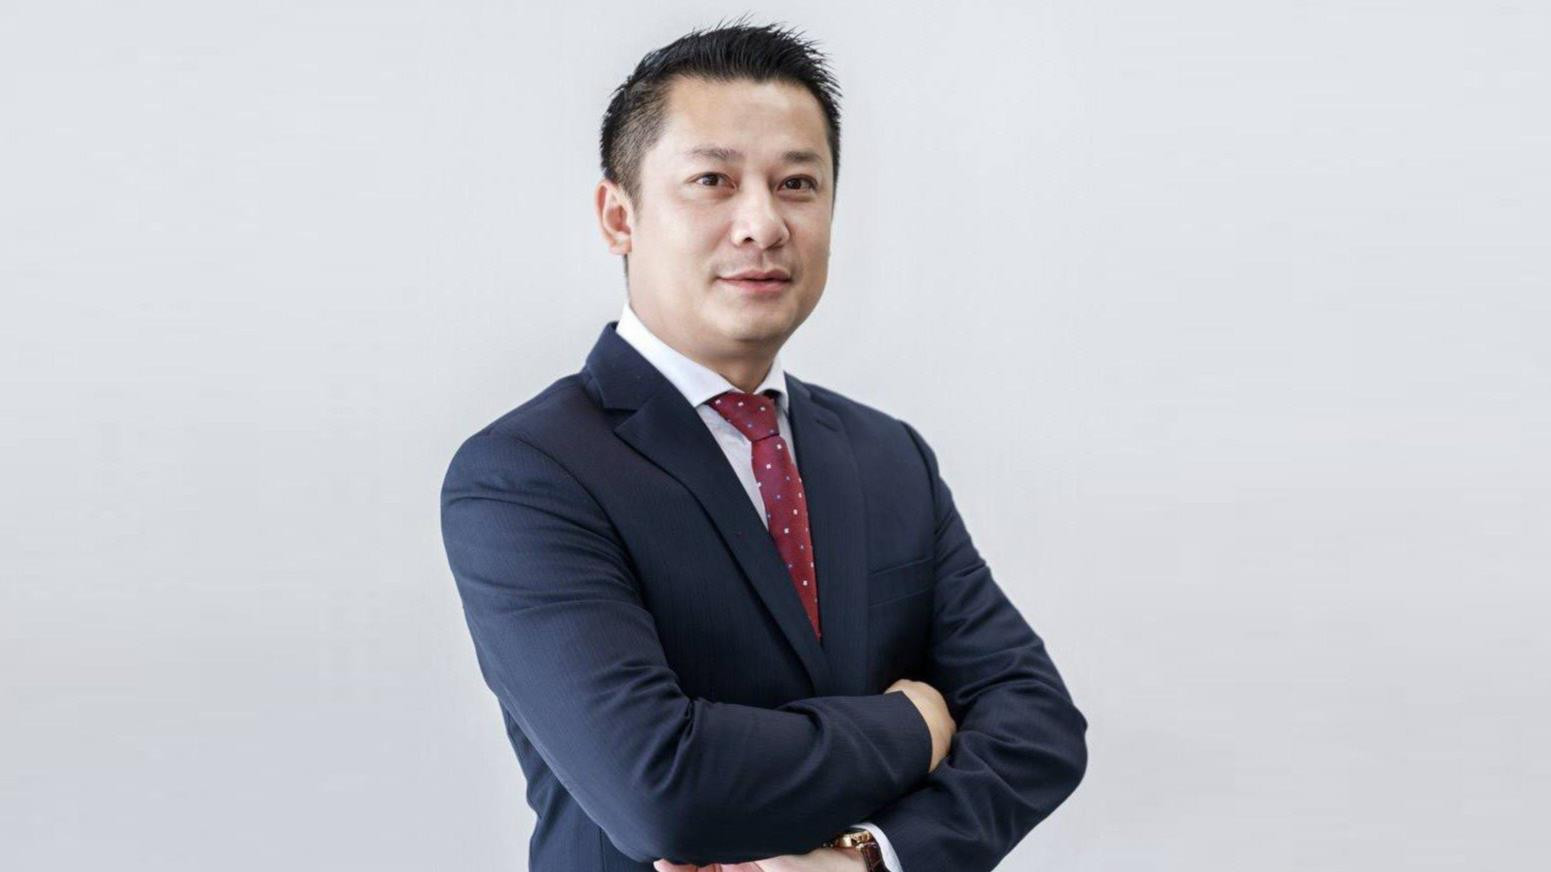 Chân dung tân CEO Eximbank: Tiếp quản ghế CEO EVN Finance khi mới ngoài 40, kinh nghiệm 17 năm ngành tài chính - ngân hàng